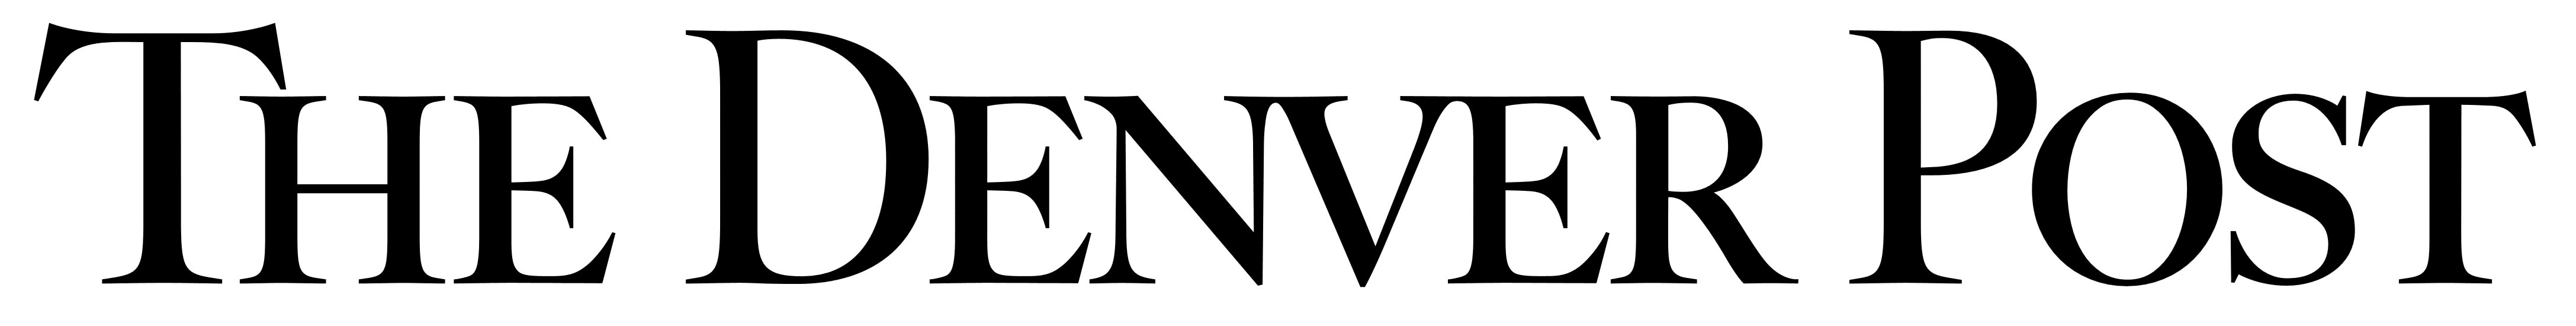 The_Denver_Post_logo